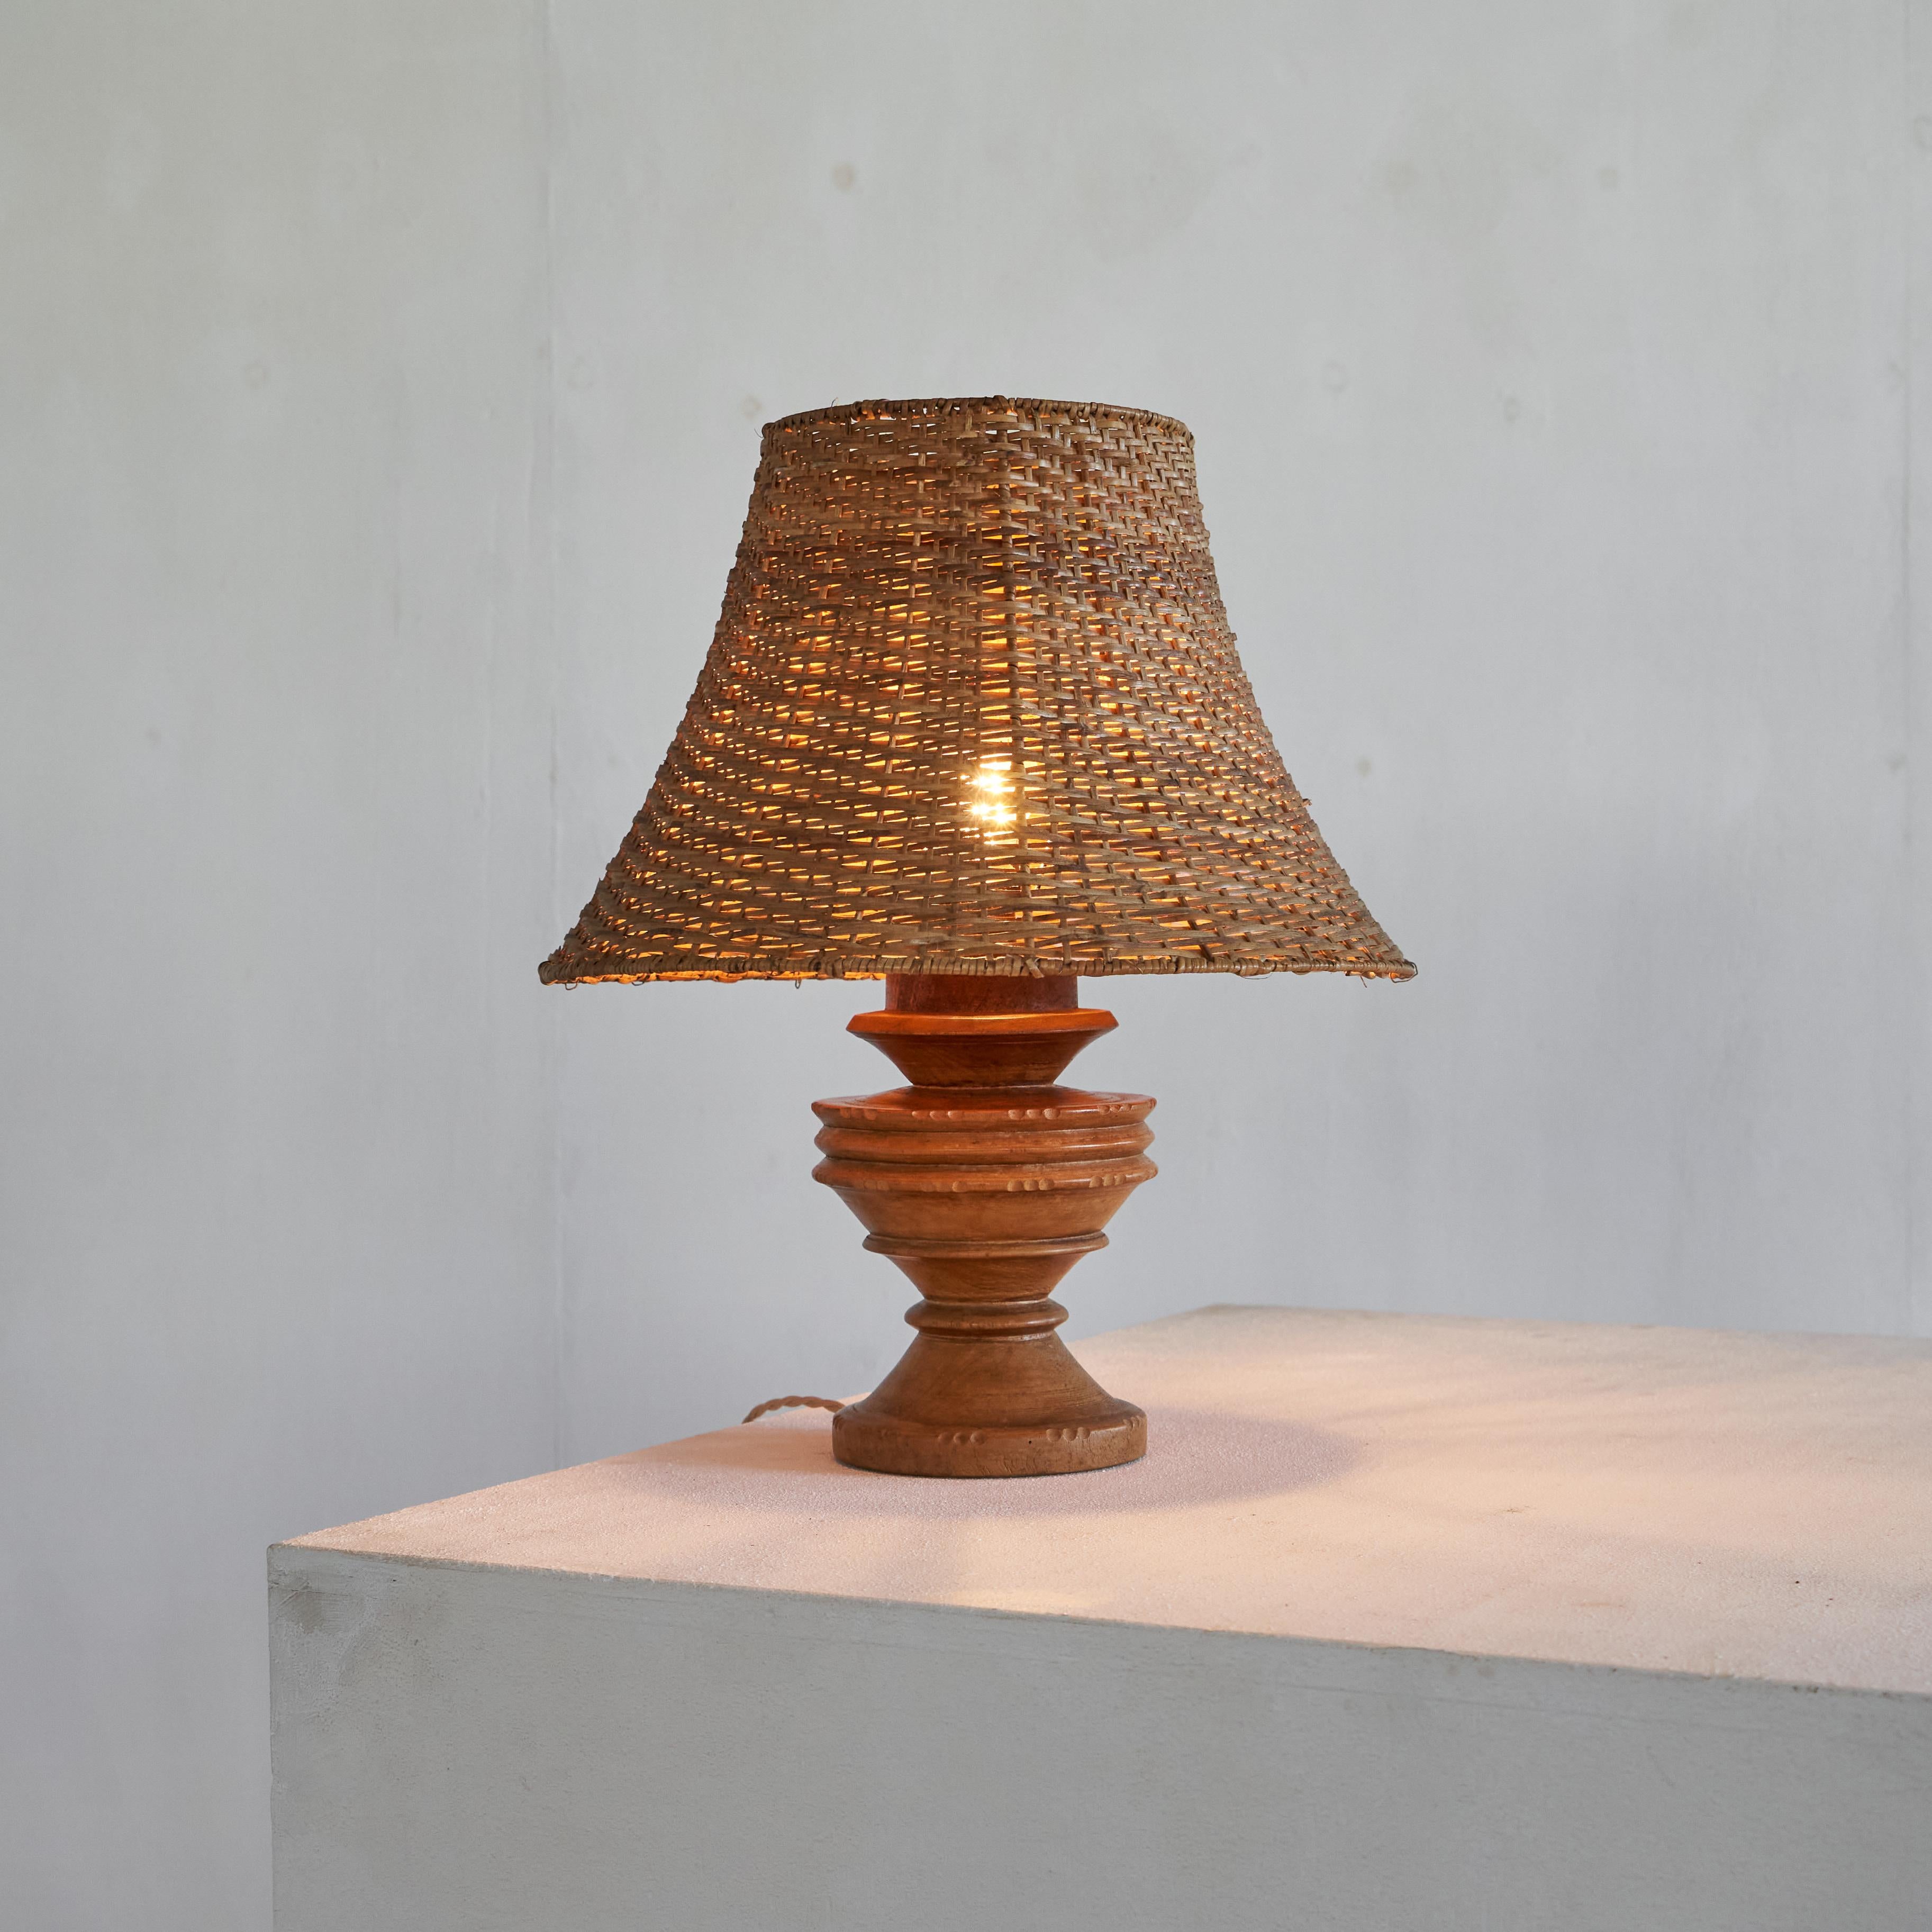 Lampe de table antique Wabi Sabi en bois tourné et en rotin, début du 20e siècle.

Belle et intemporelle lampe de table wabi sabi en bois tourné et sculpté avec un bel abat-jour en rotin vintage. La forme et les détails sculptés sont superbes - ils